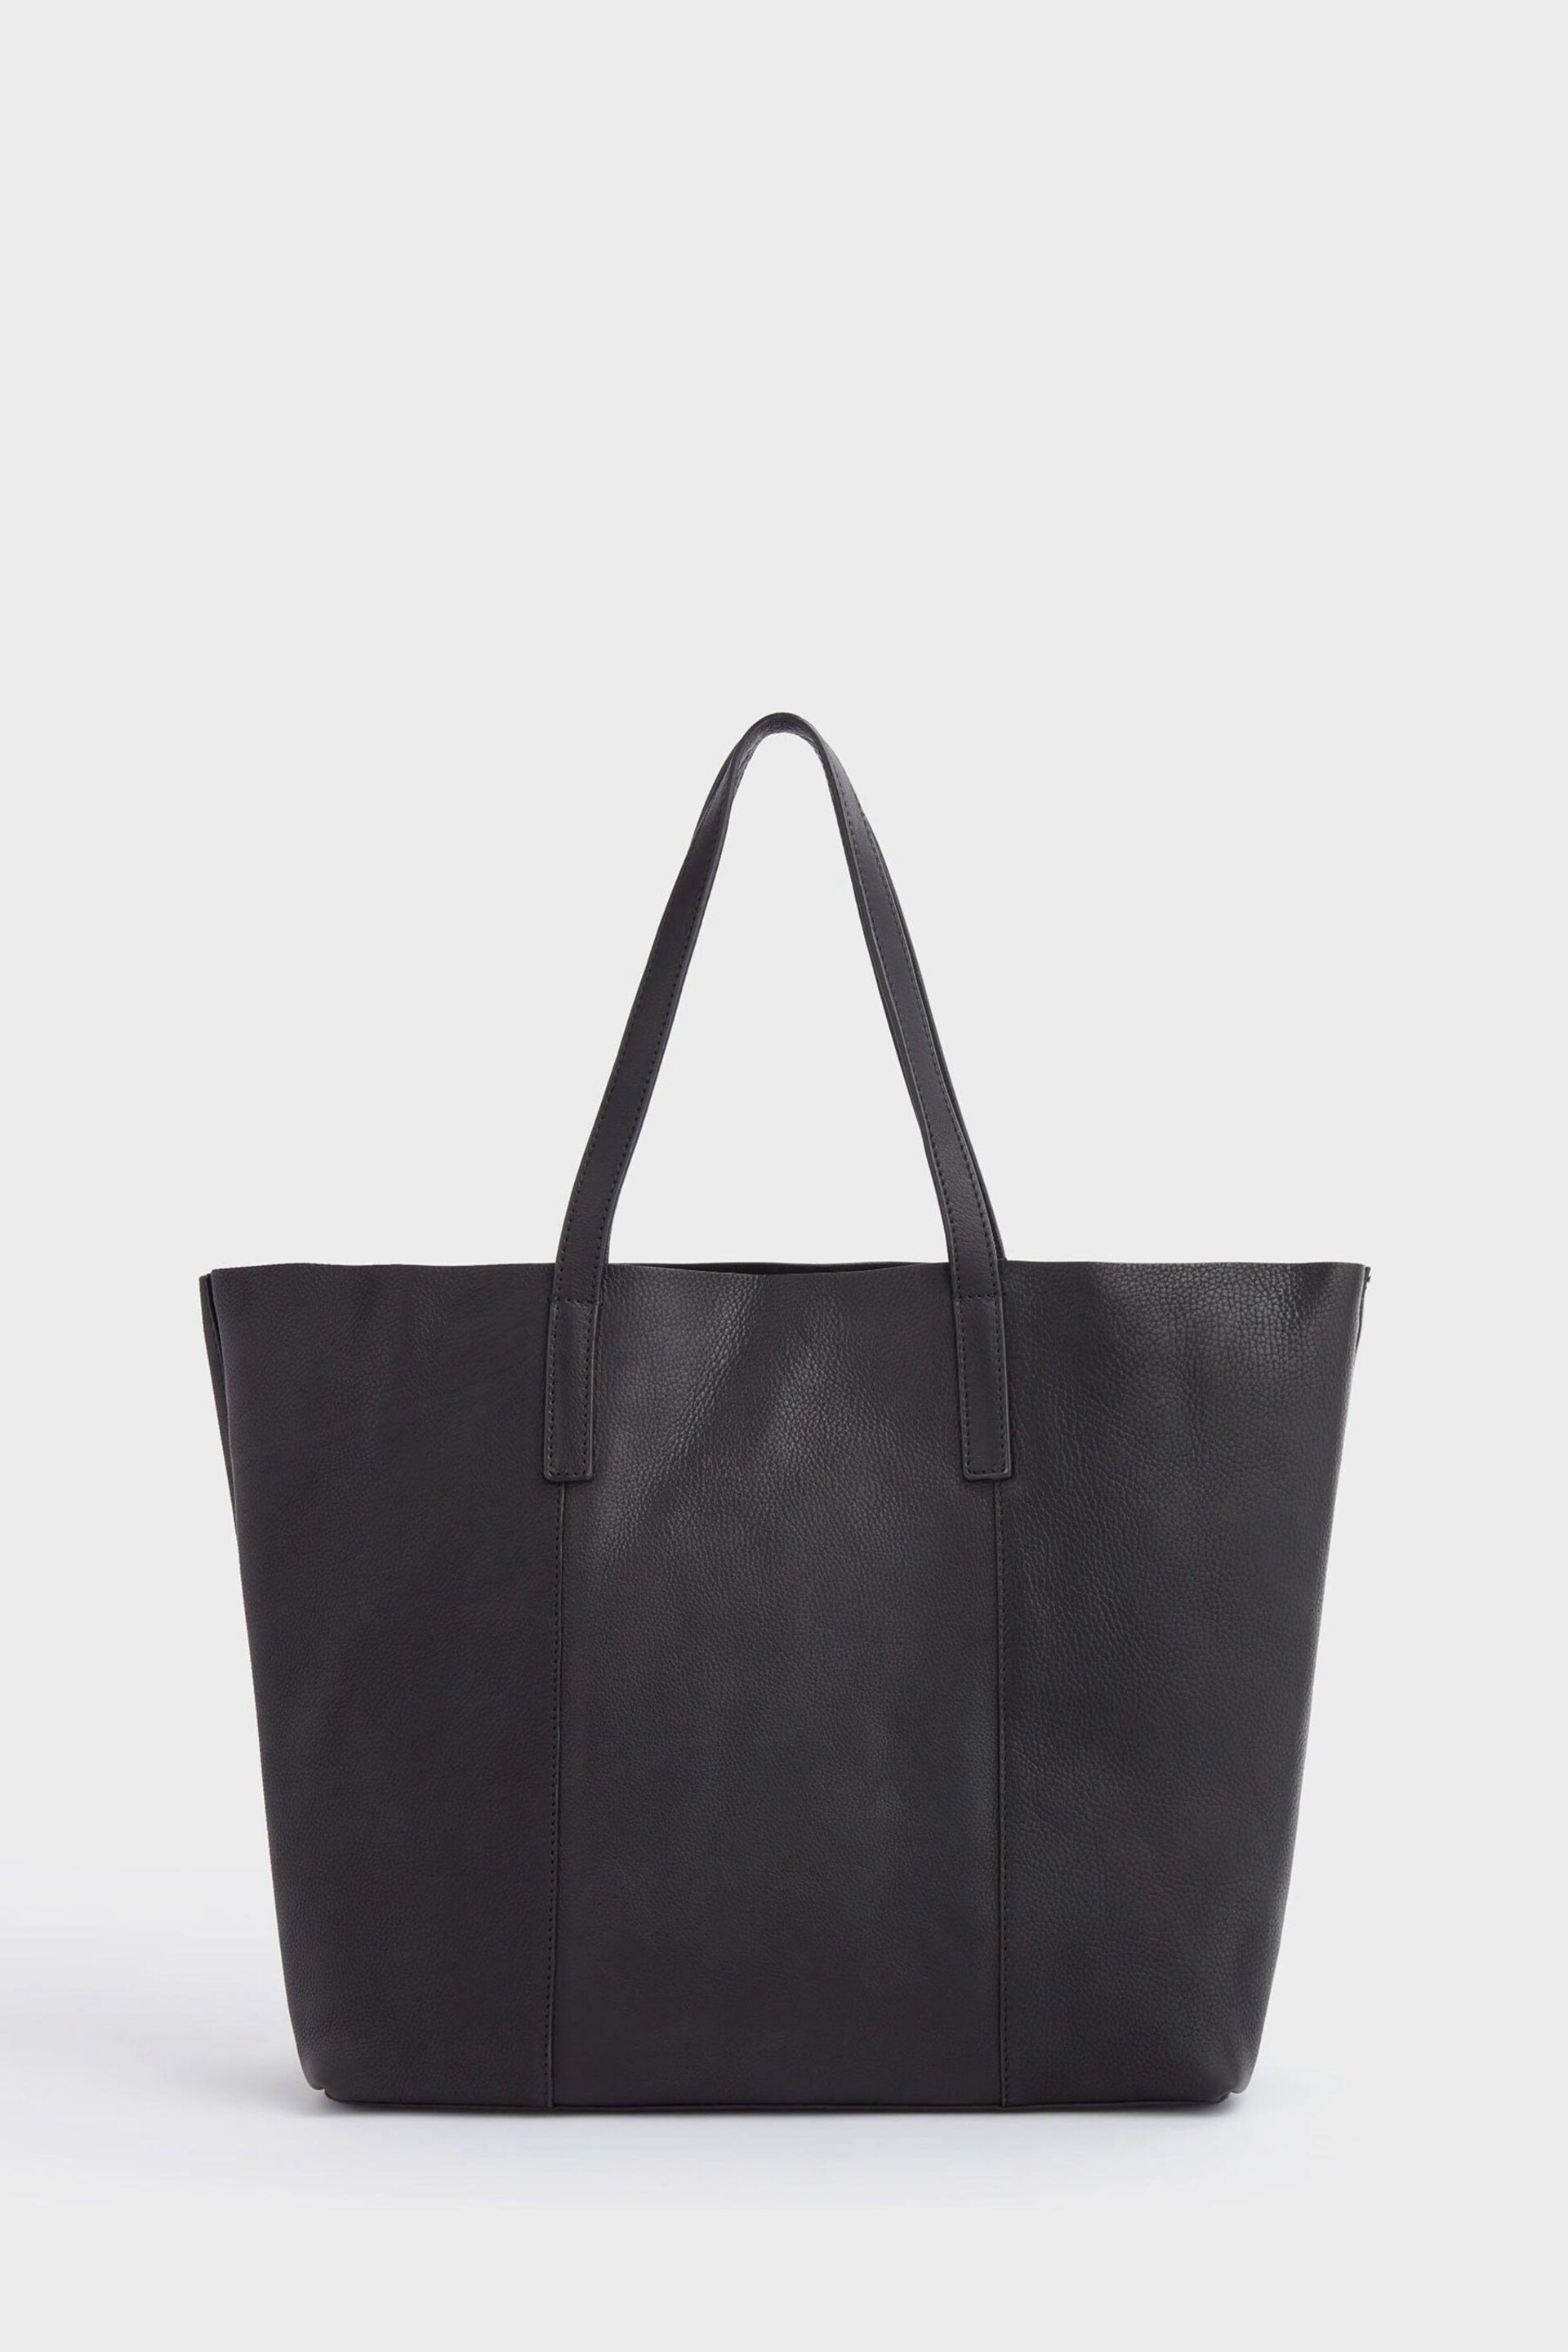 OSPREY LONDON The Vintage Leather Santa Fe Black Tote Bag - Image 5 of 6